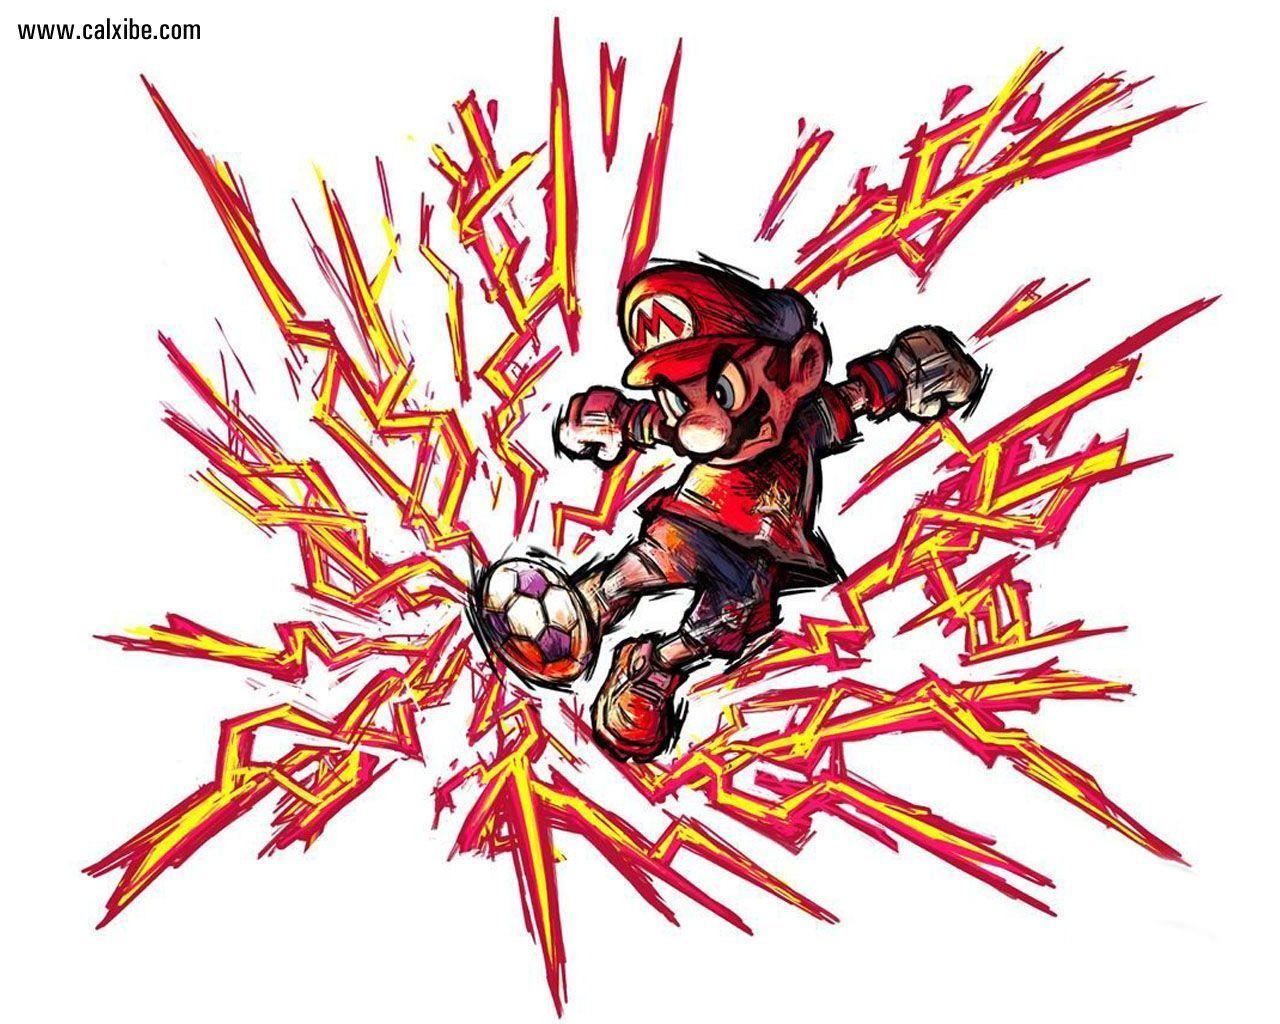 Miscellaneous: Super Mario Striker II, picture nr. 13790